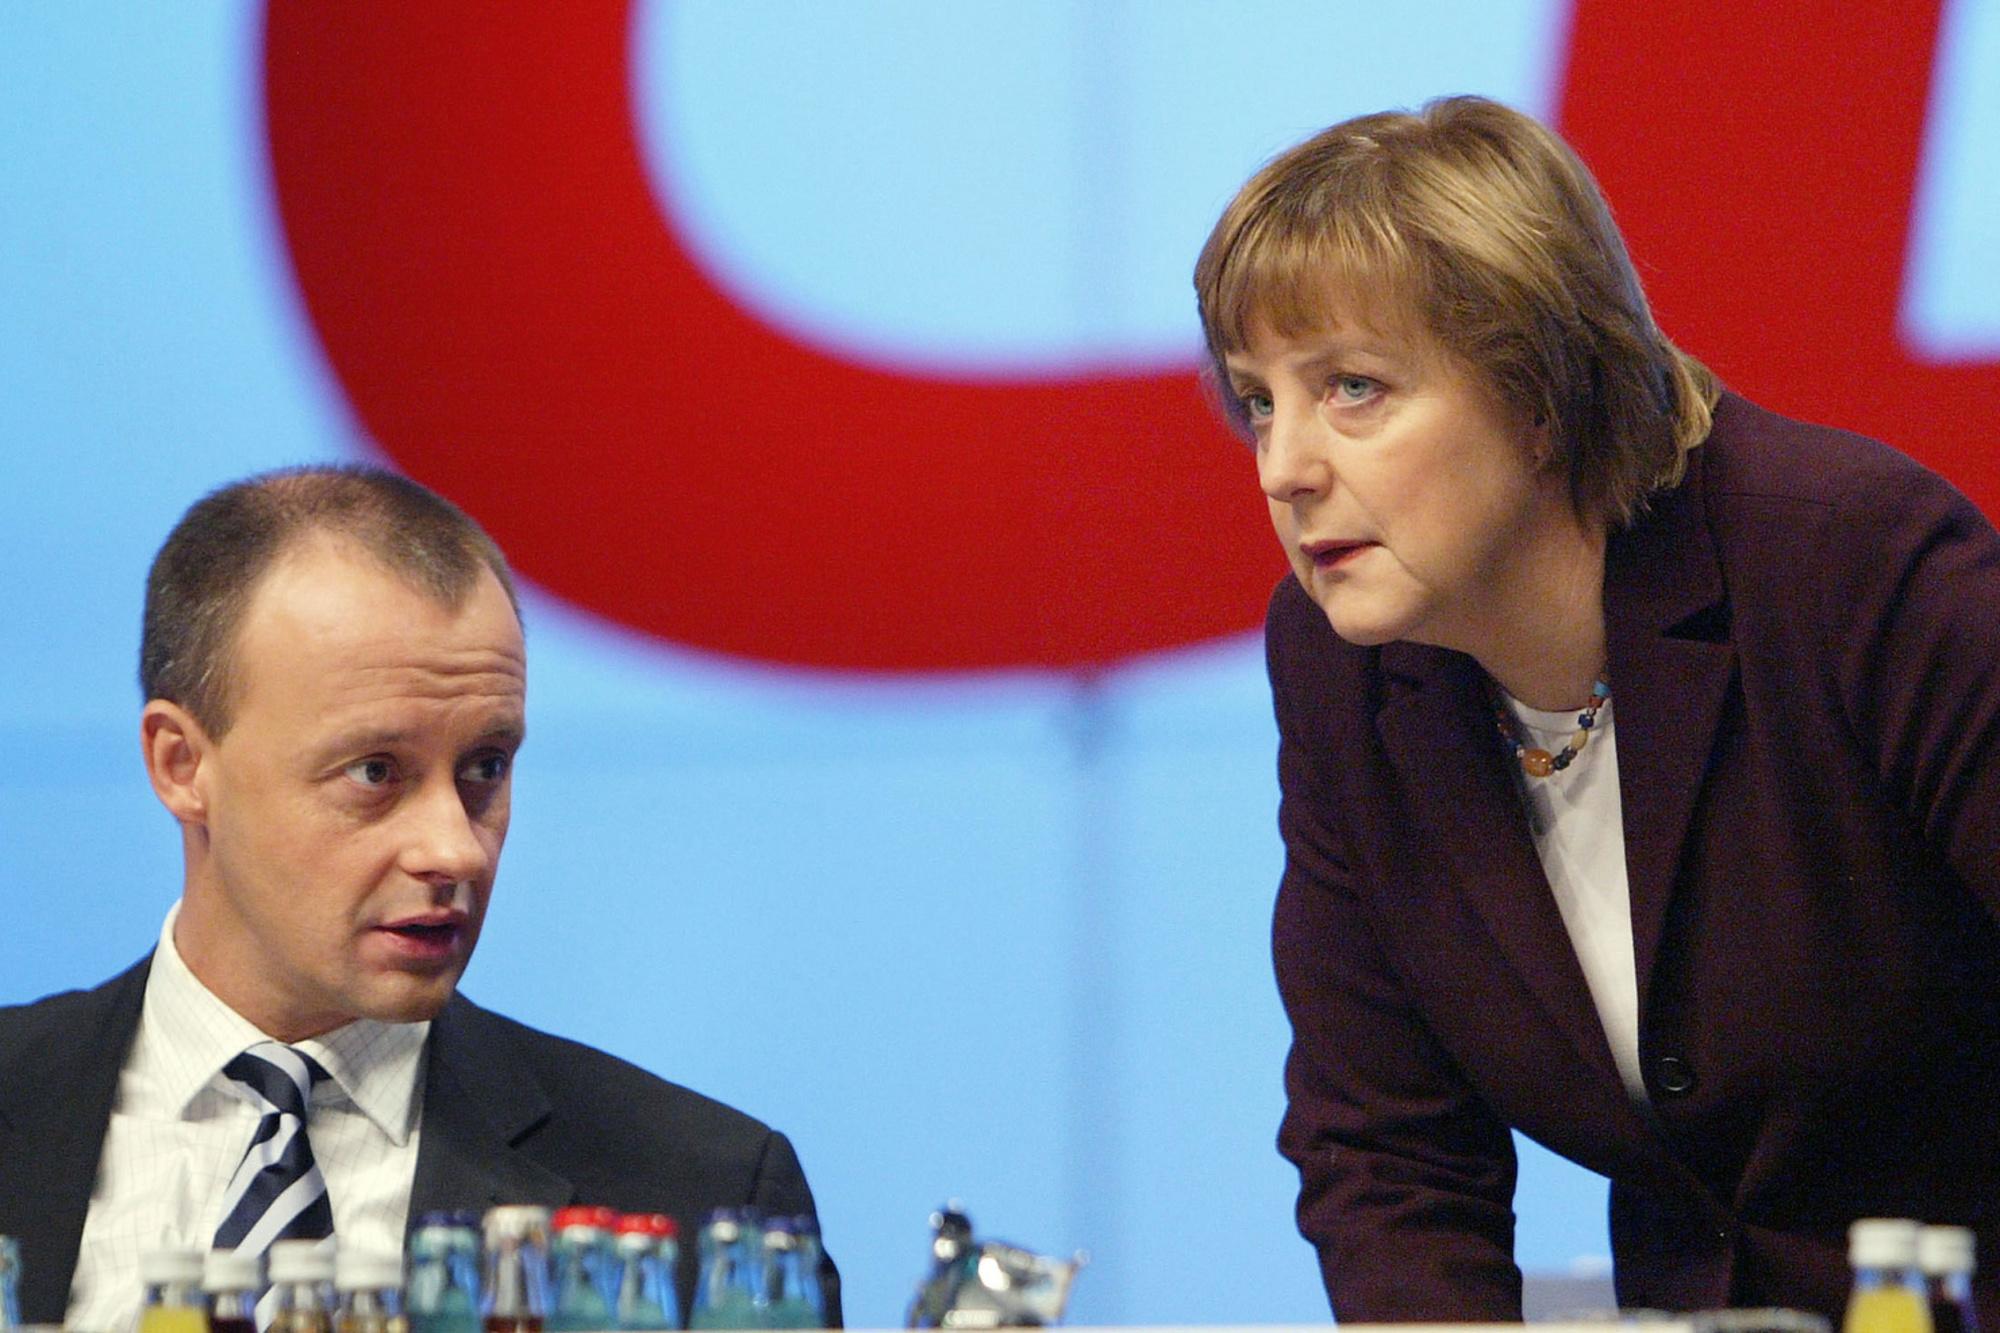 Friedrich Merz en Angela Merkel in 2003